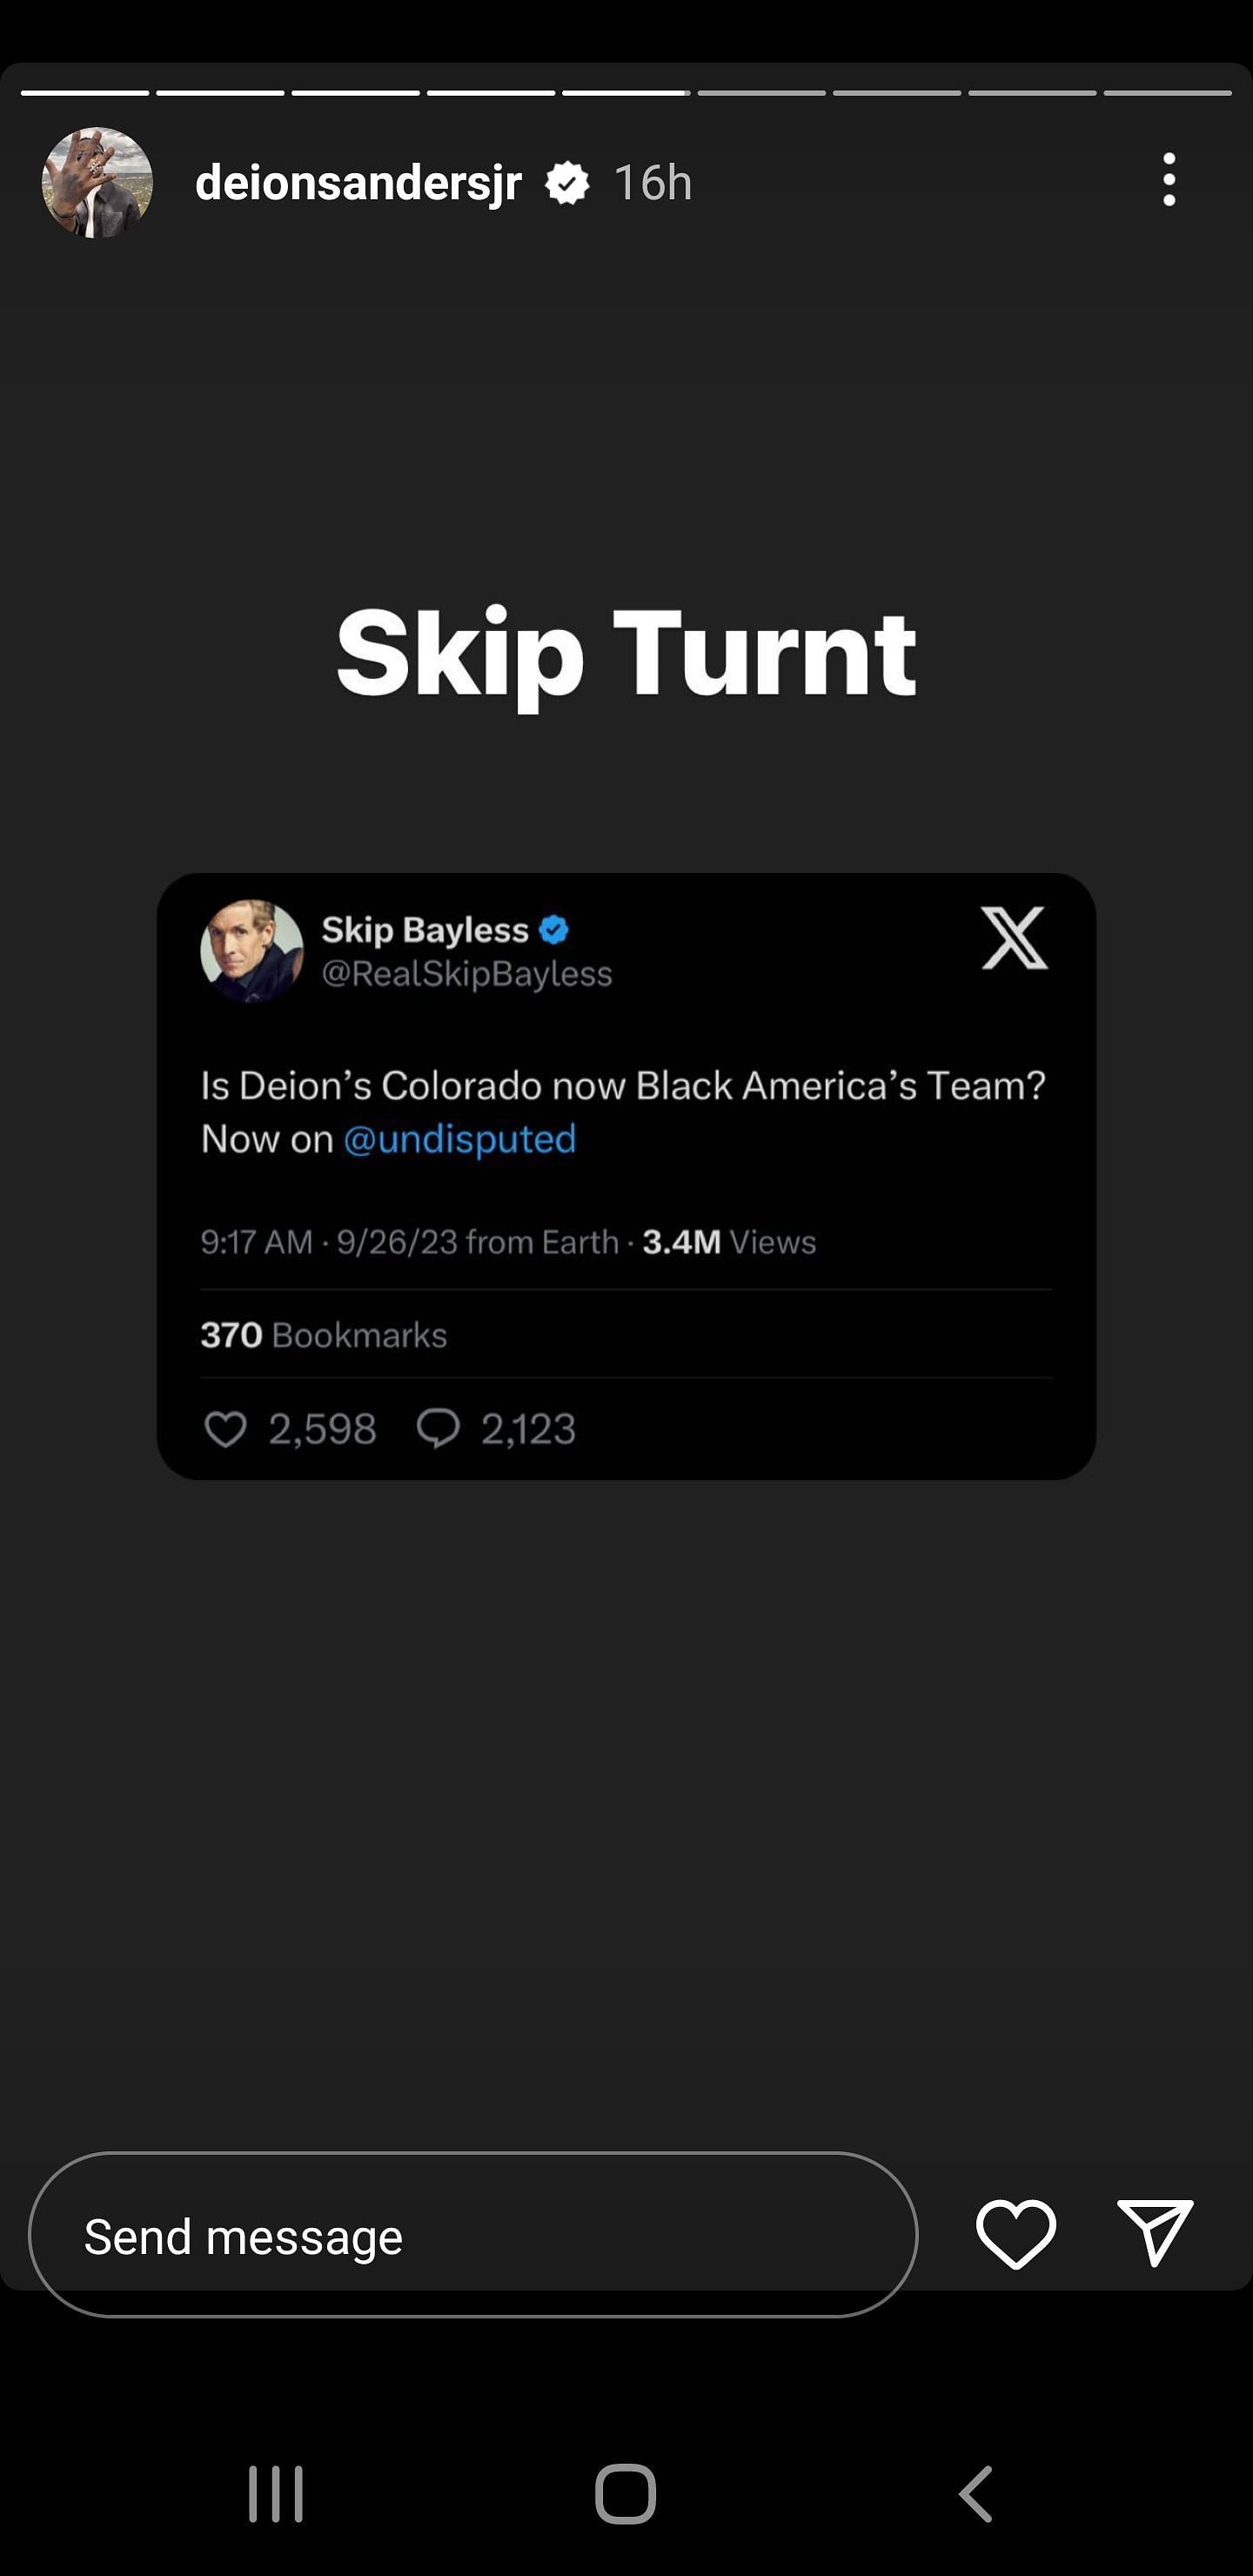 Deion Sanders Jr. responds to Skip Bayless via his Instagram story